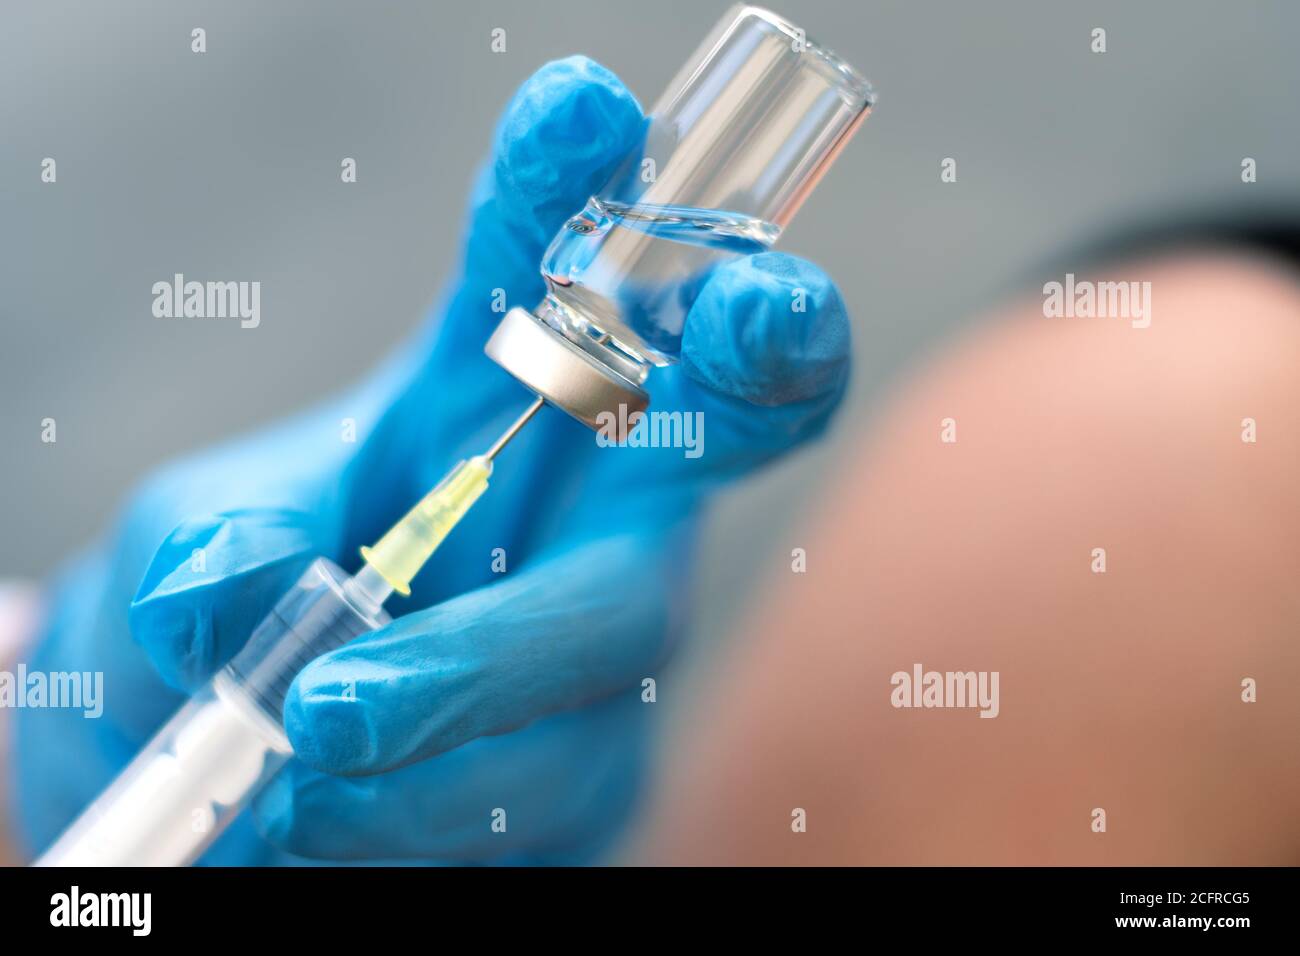 Biología y ciencia. Médico sosteniendo una jeringa, dando la vacunación. Alerta global. Vacunación. Gripe. Covid-19. Coronavirus. Investigación. Foto de stock